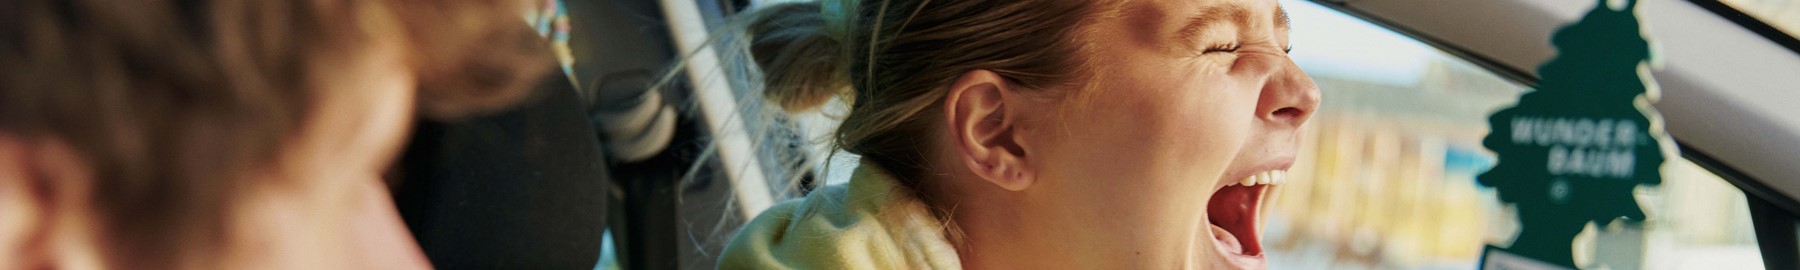 Nye alarmerende tal: Unge er omgivet af lyd og støj, men uvidende om risikoen for høreskader